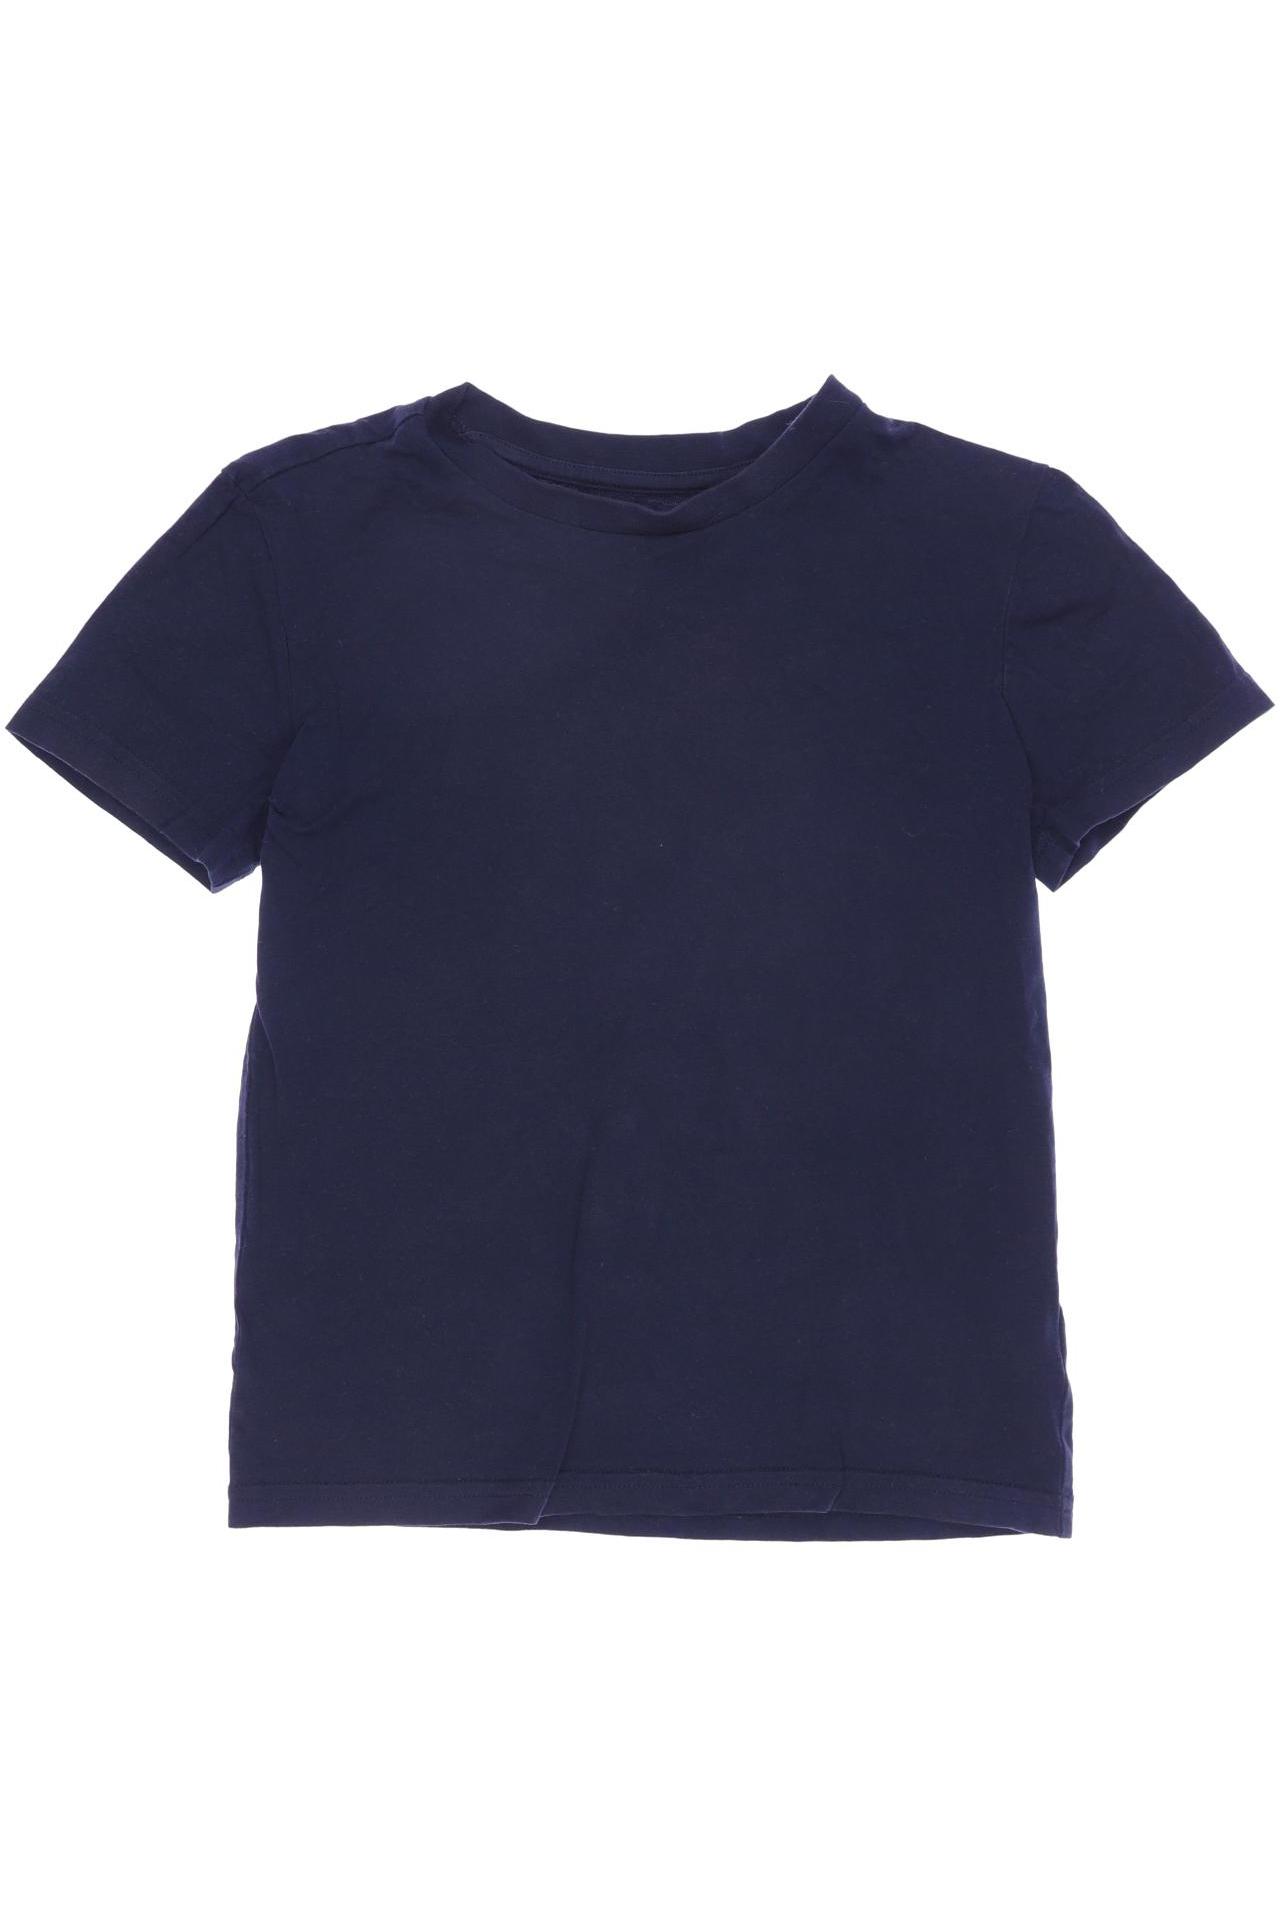 Manguun Jungen T-Shirt, marineblau von Manguun